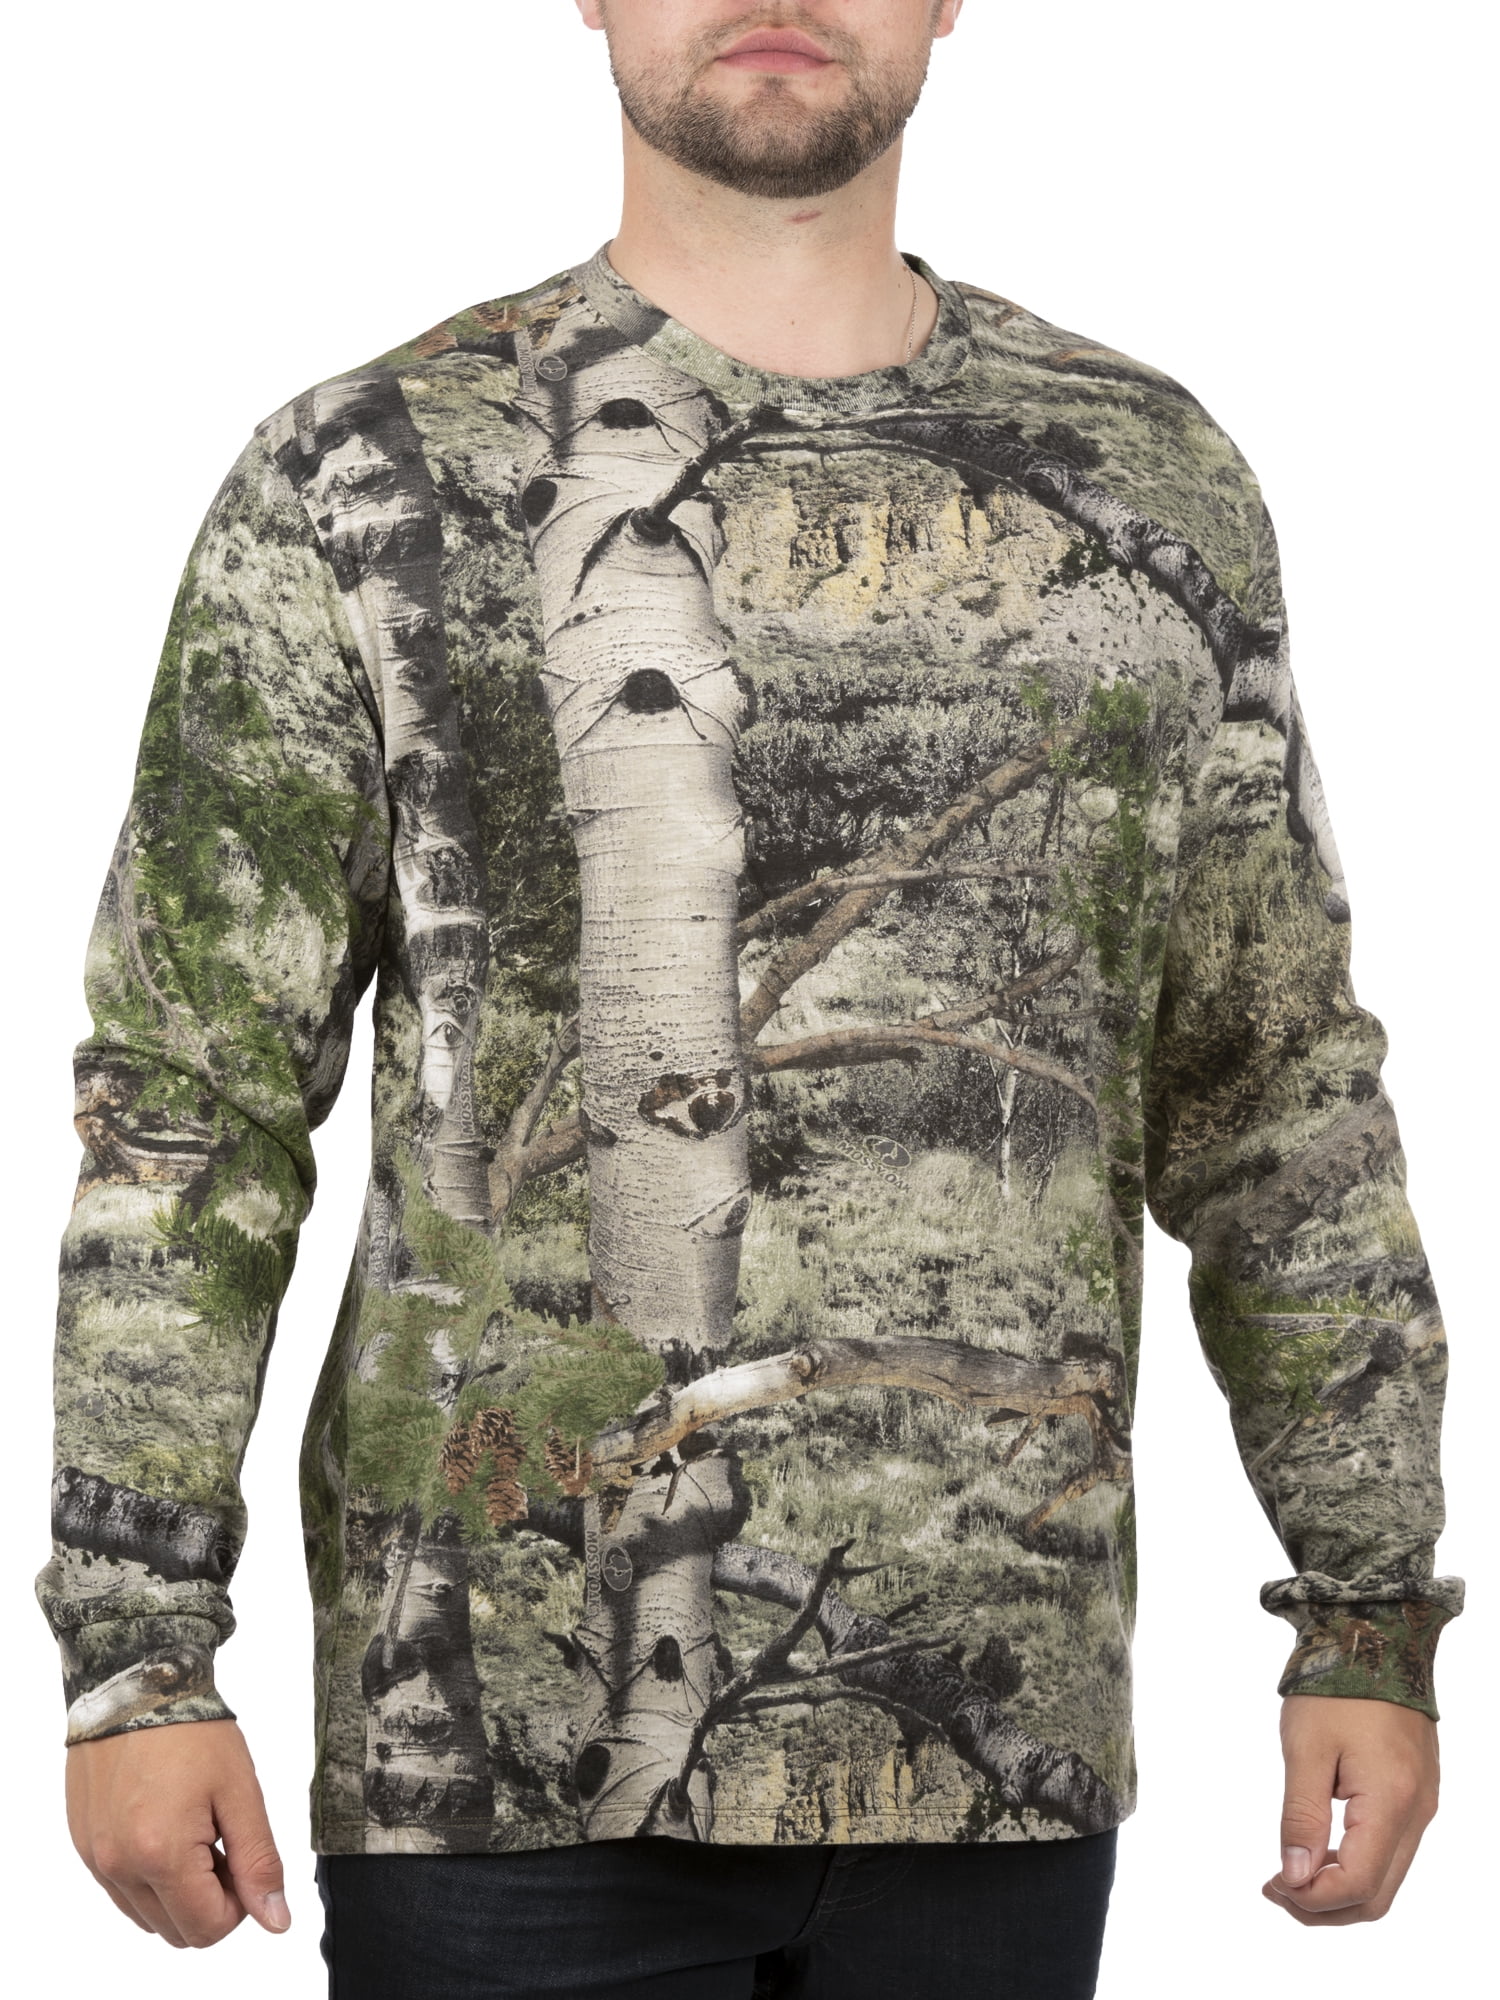 New REALTREE Xtra Shirt Mens Long Sleeve T-Shirt M or L Hunting Camo 